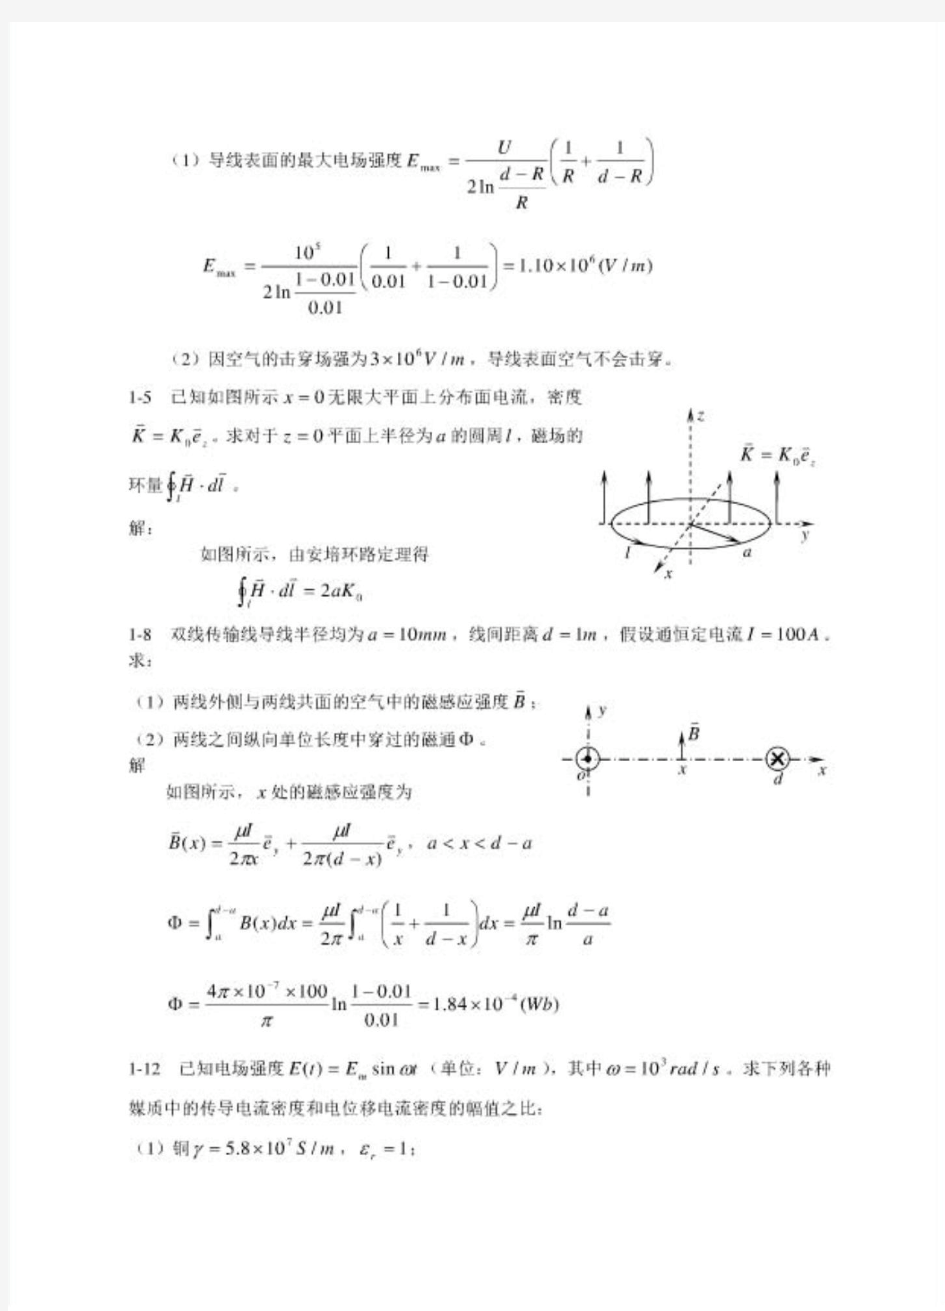 电磁场导论 (孟昭敦 著)课后习题答案 中国电力出版社